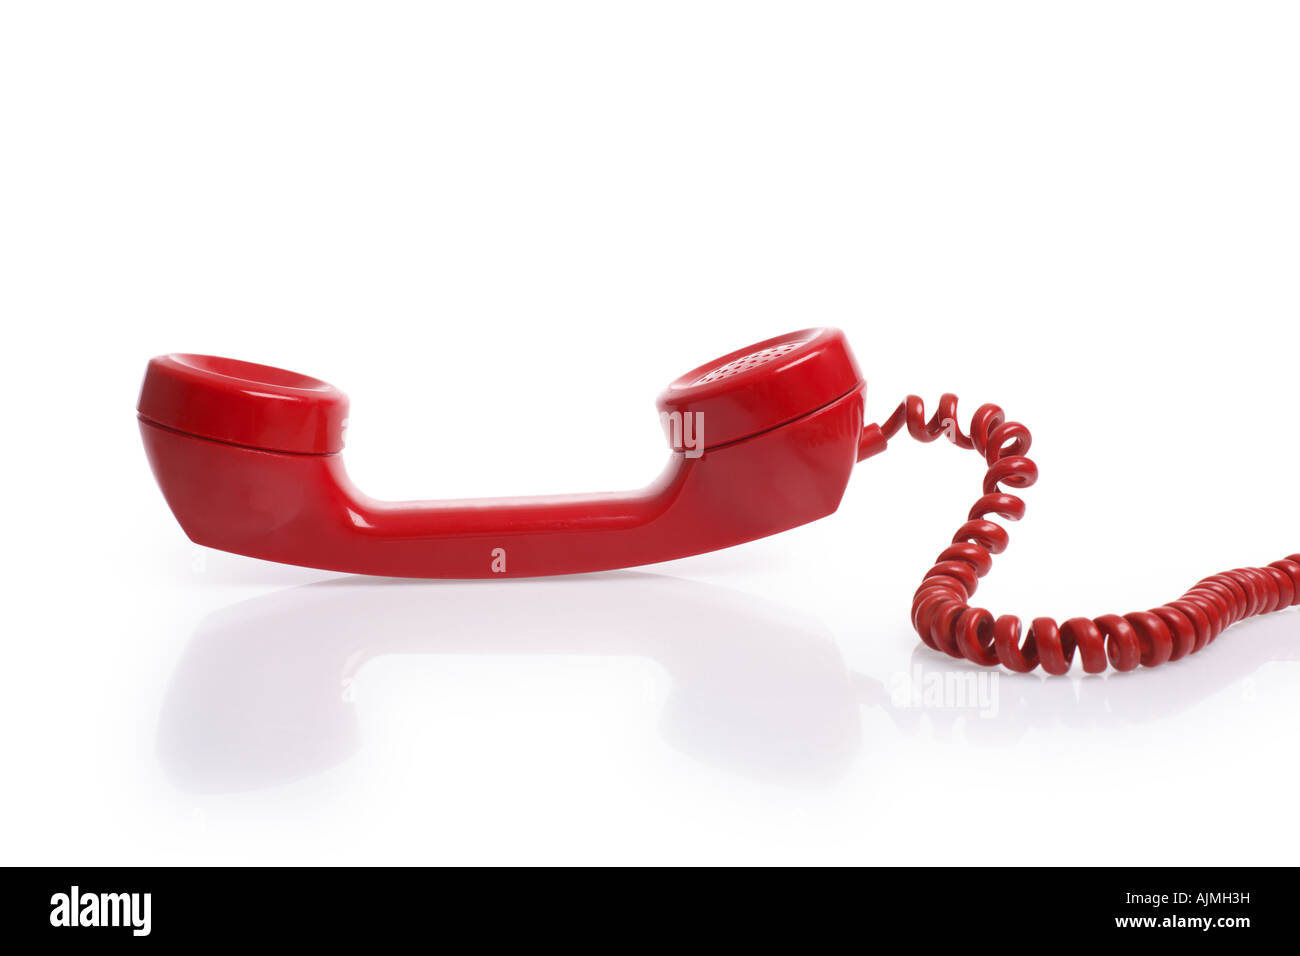 Cortar el receptor del teléfono rojo sobre fondo blanco. Foto de stock